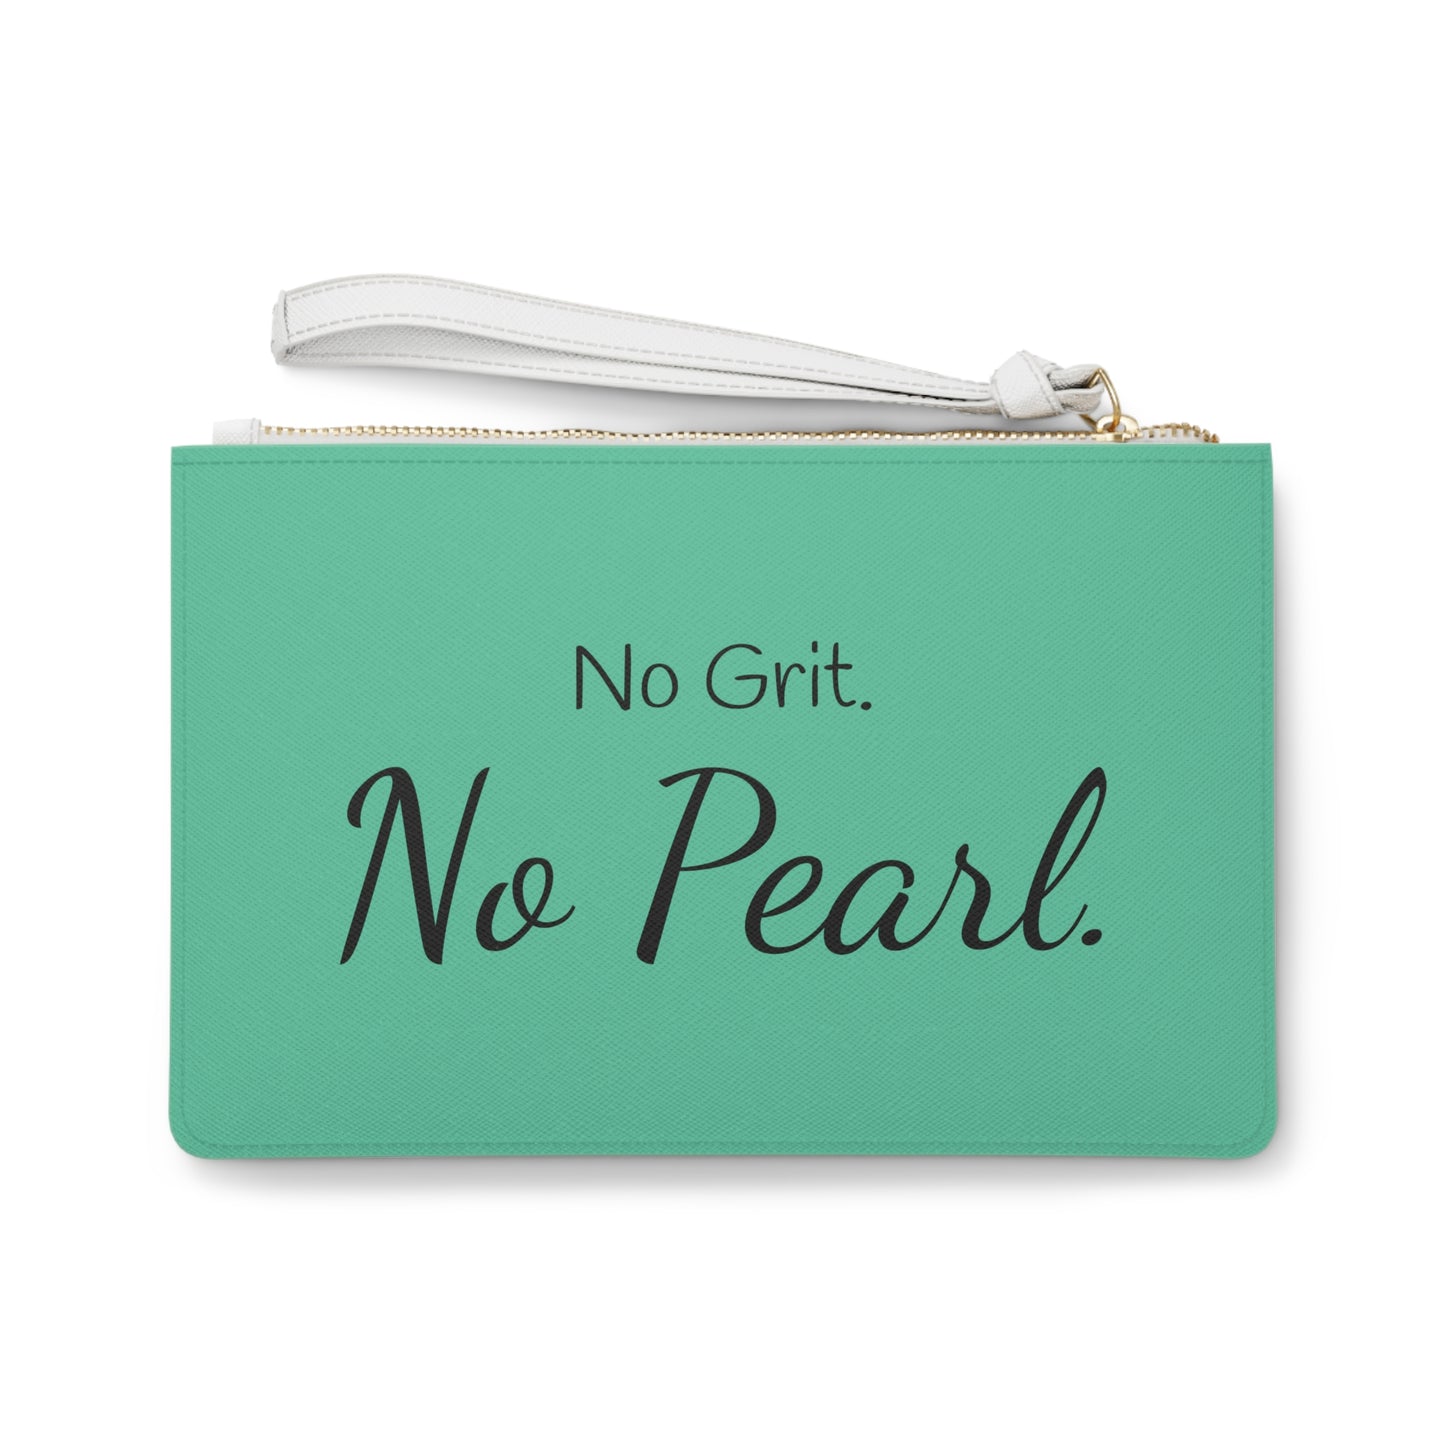 Clutch Bag - No Grit. No Pearl.